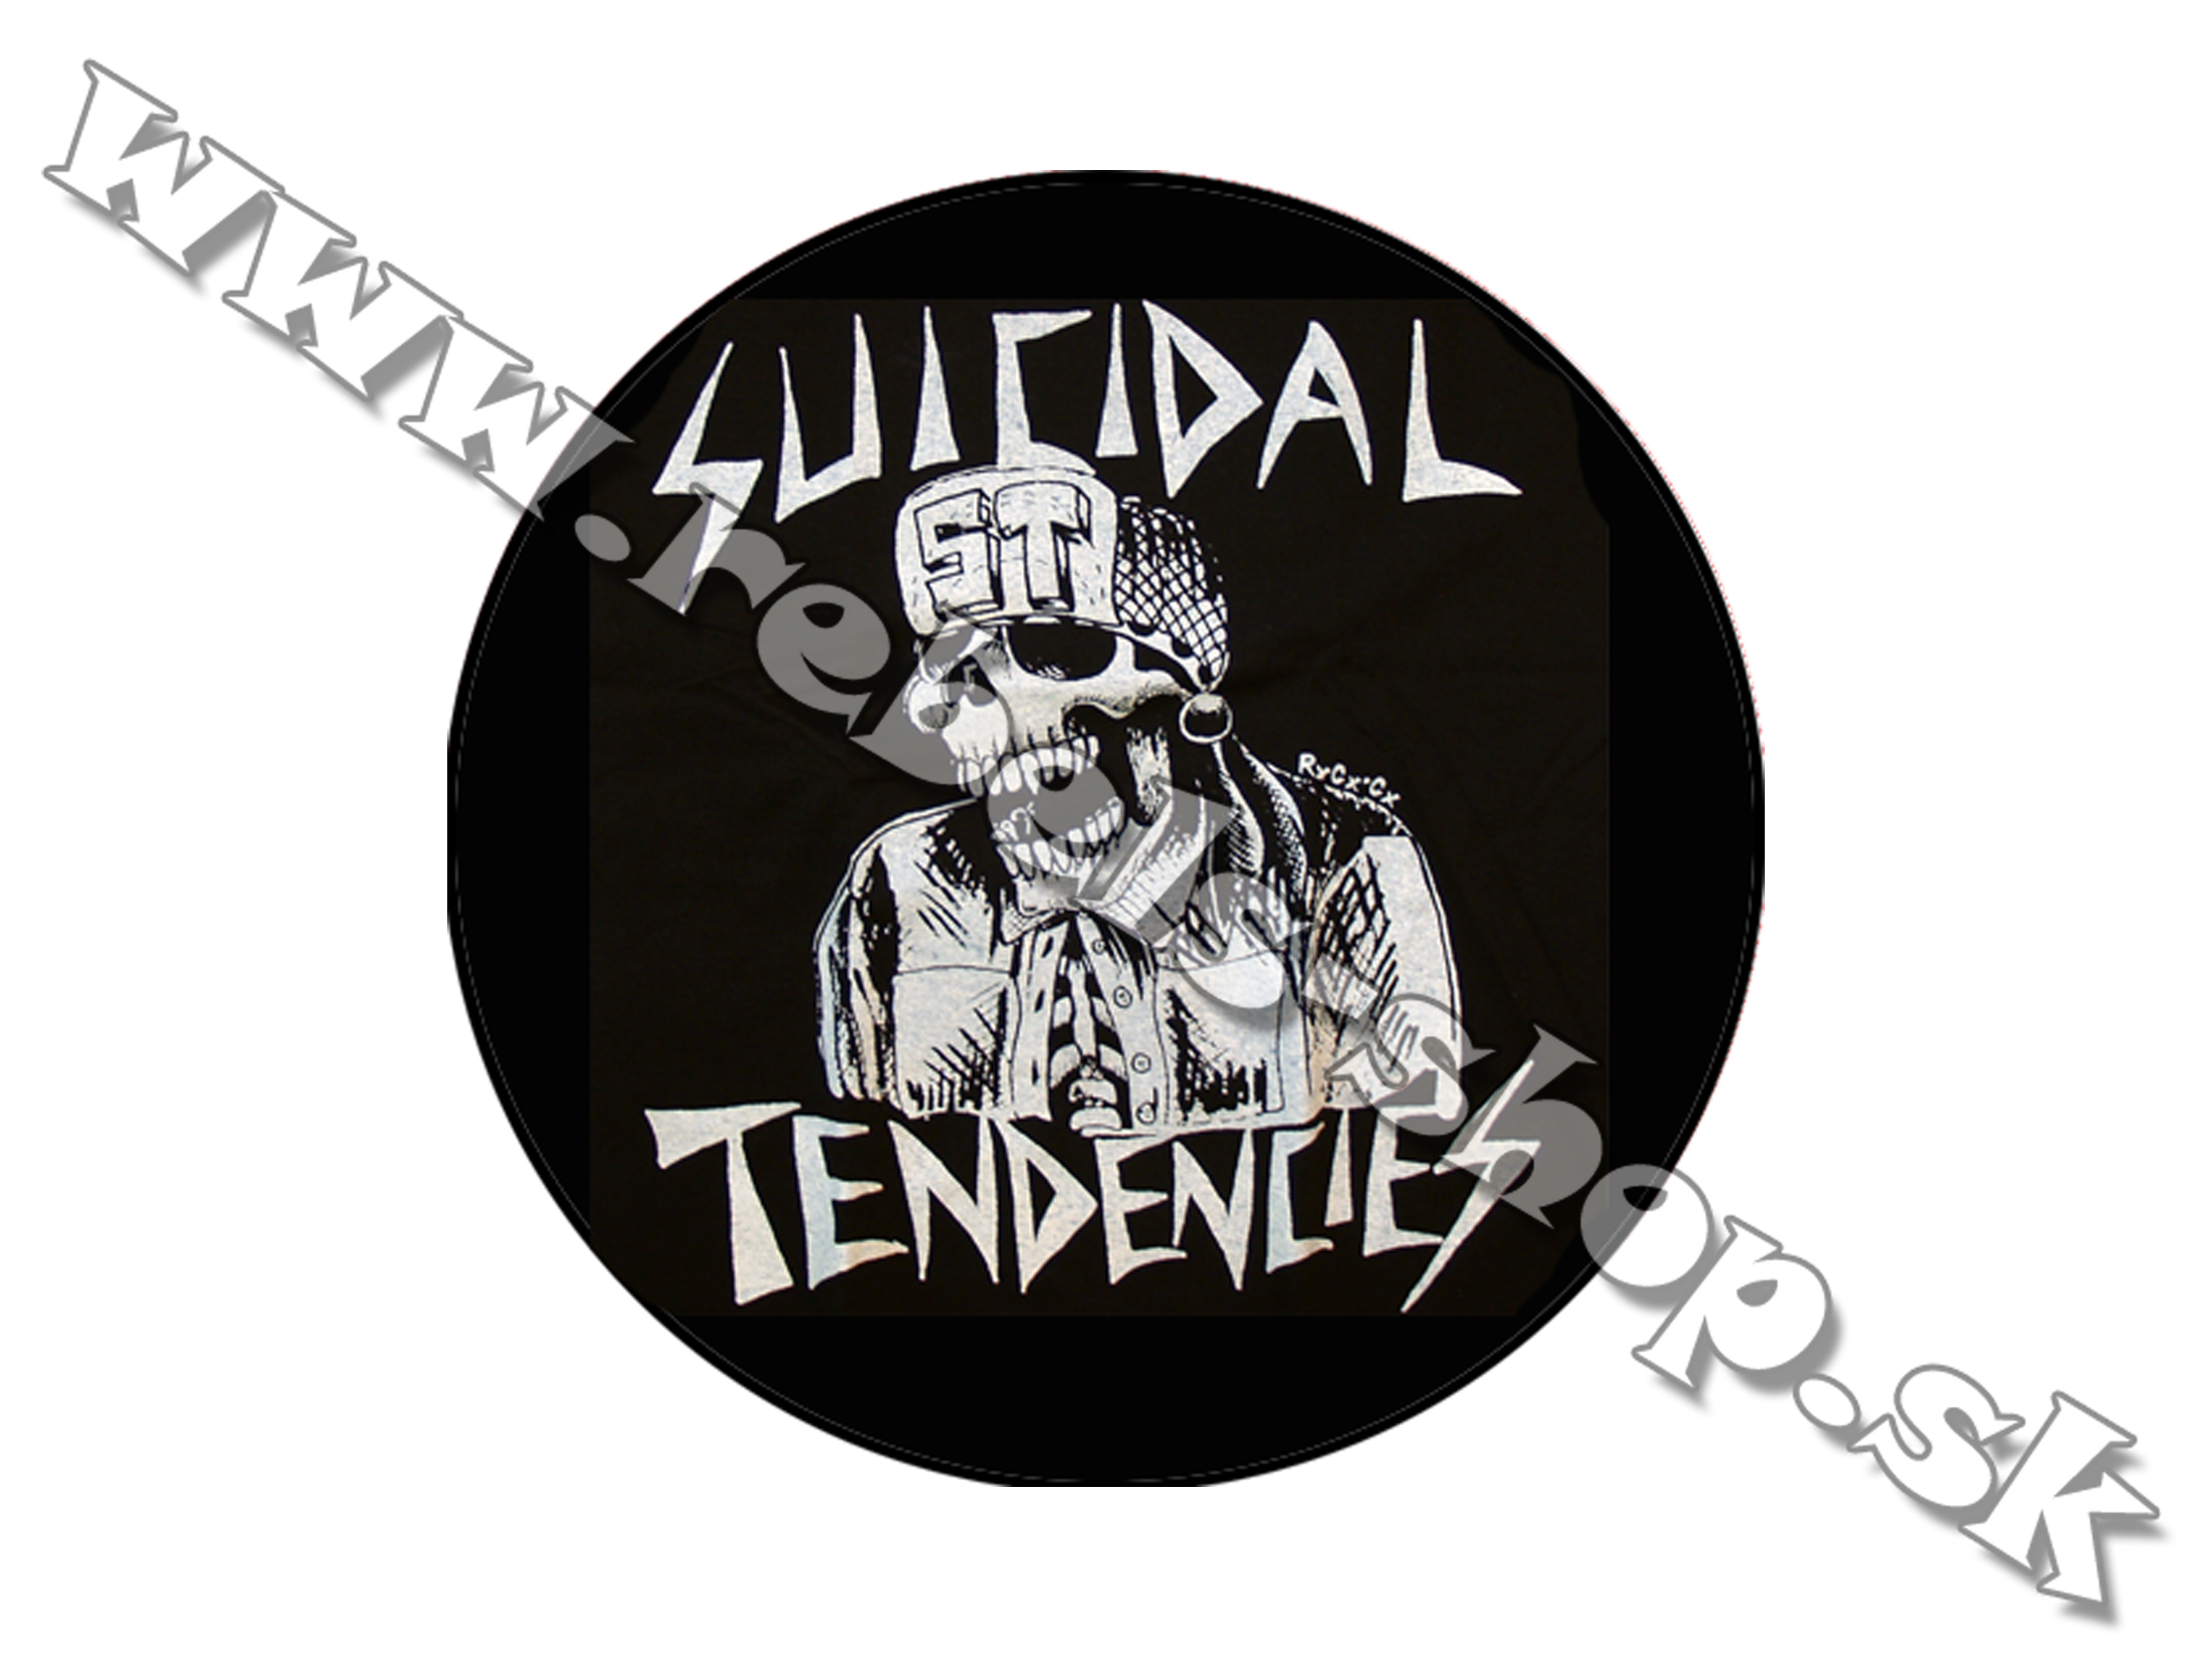 Odznak "Suicidal Tendencies"